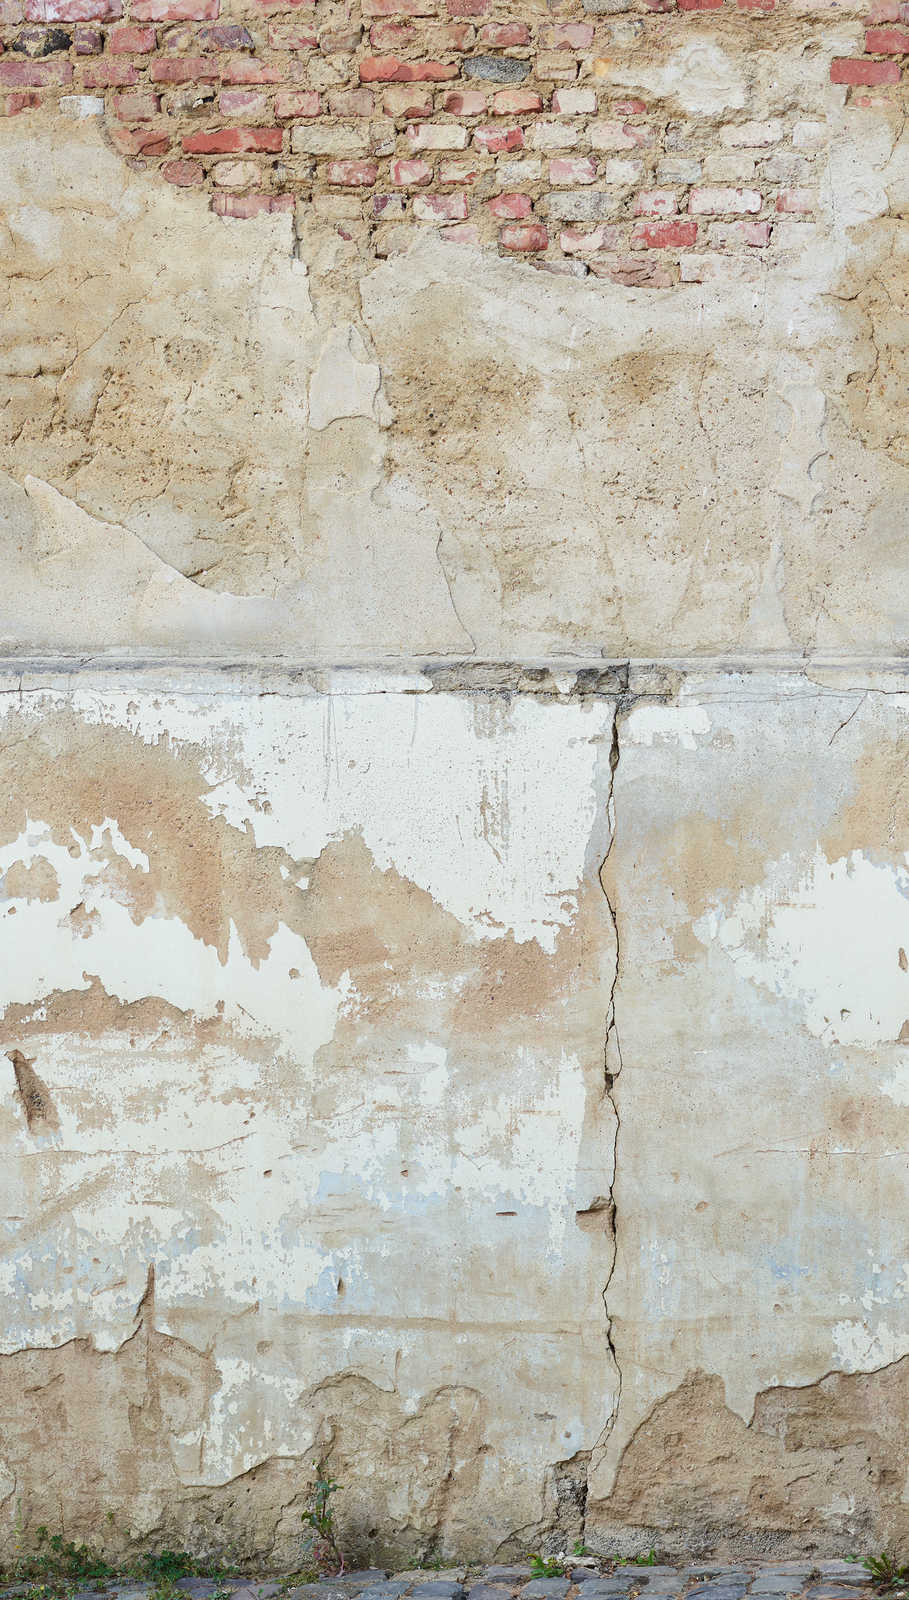             Steenmuurbehang met betonlook in abstracte look - beige, grijs, bruin
        